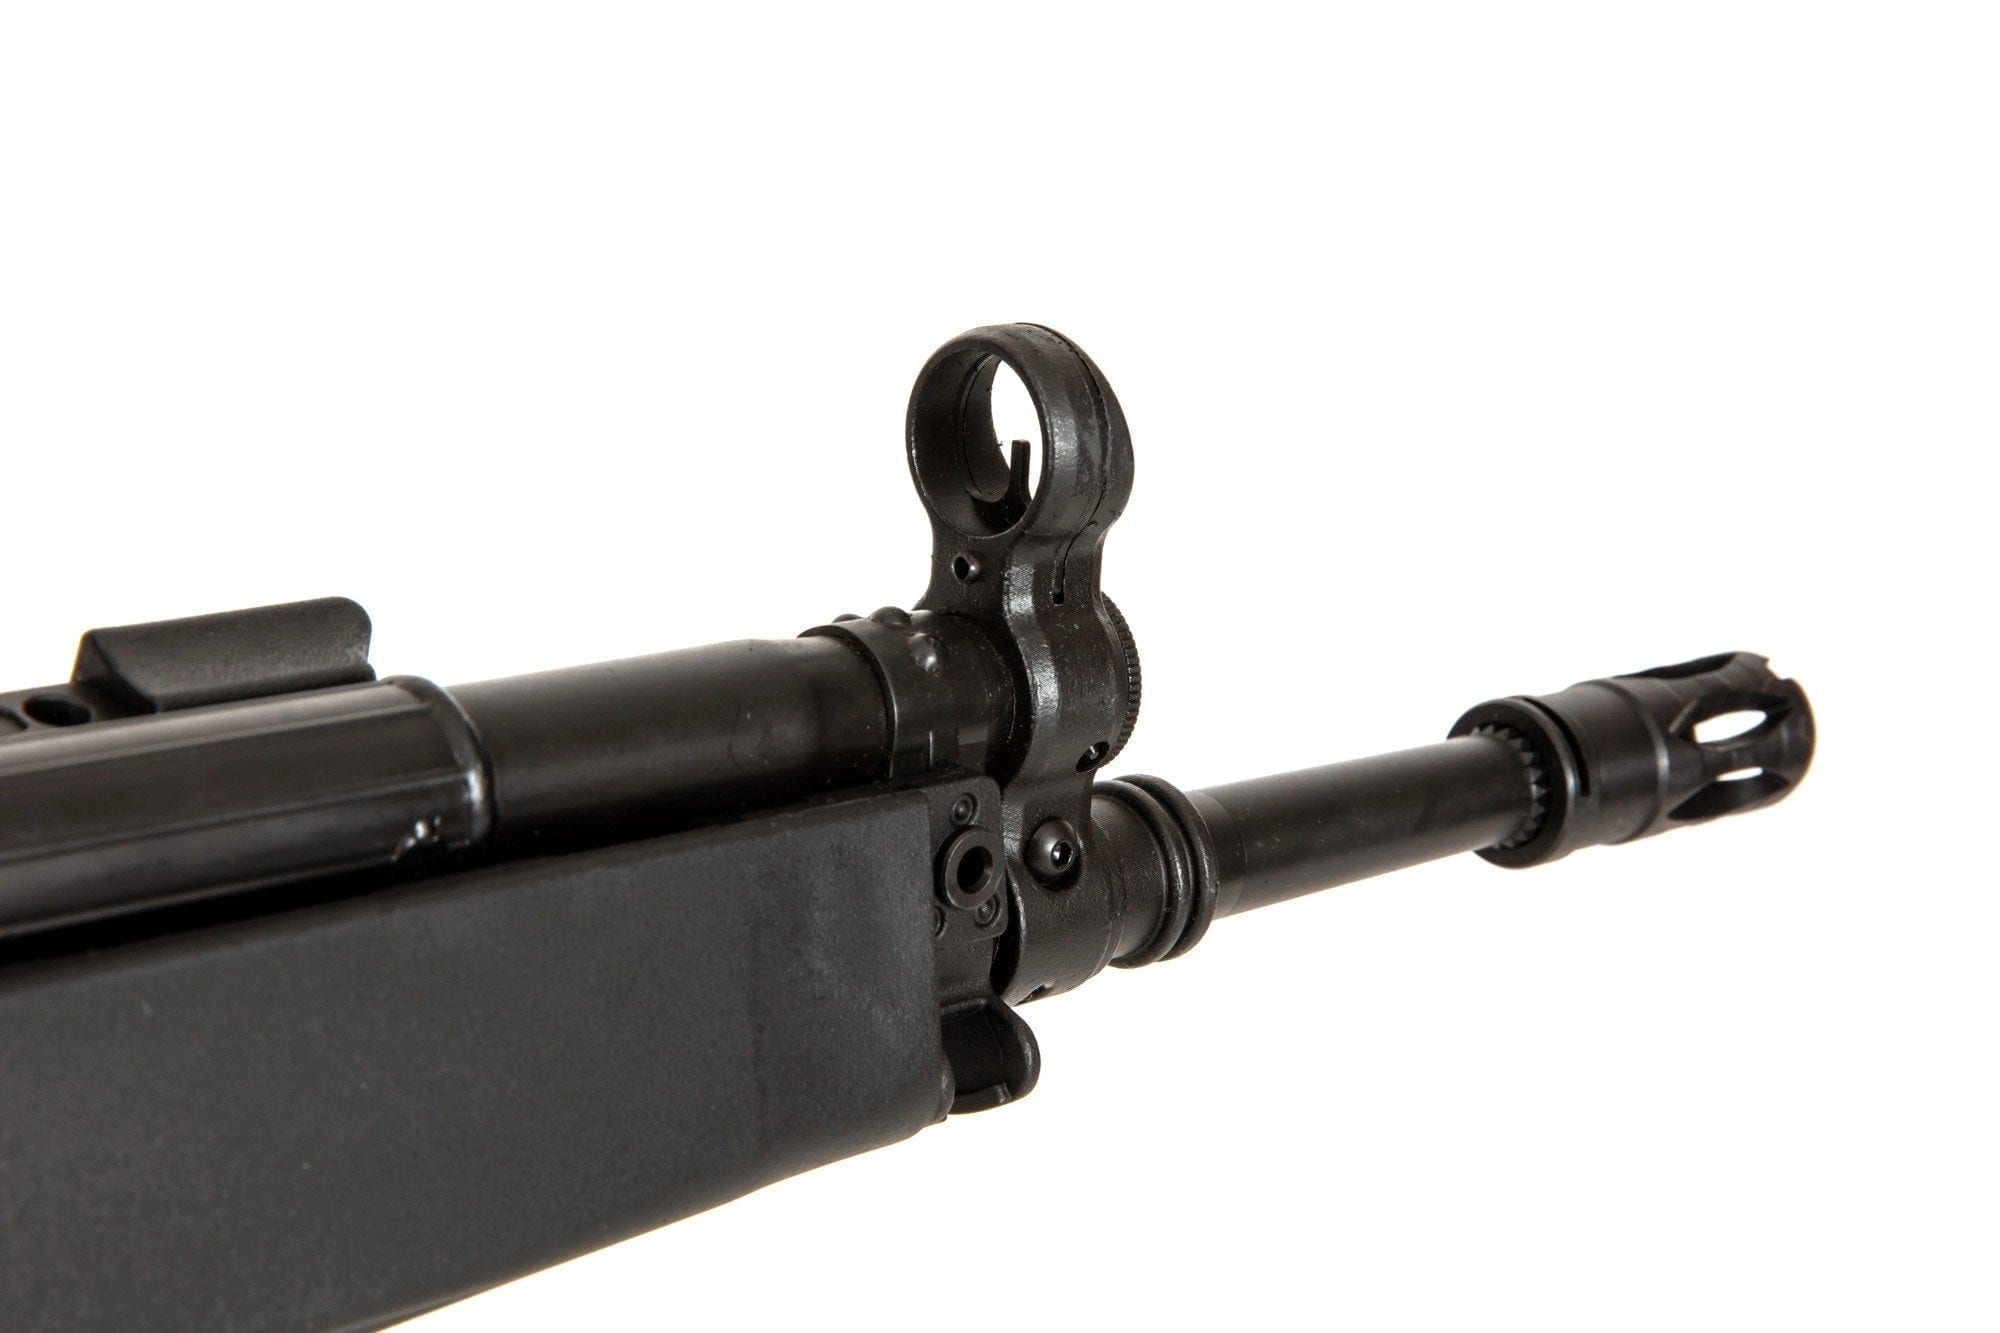 LK33A3 Carbine Replica